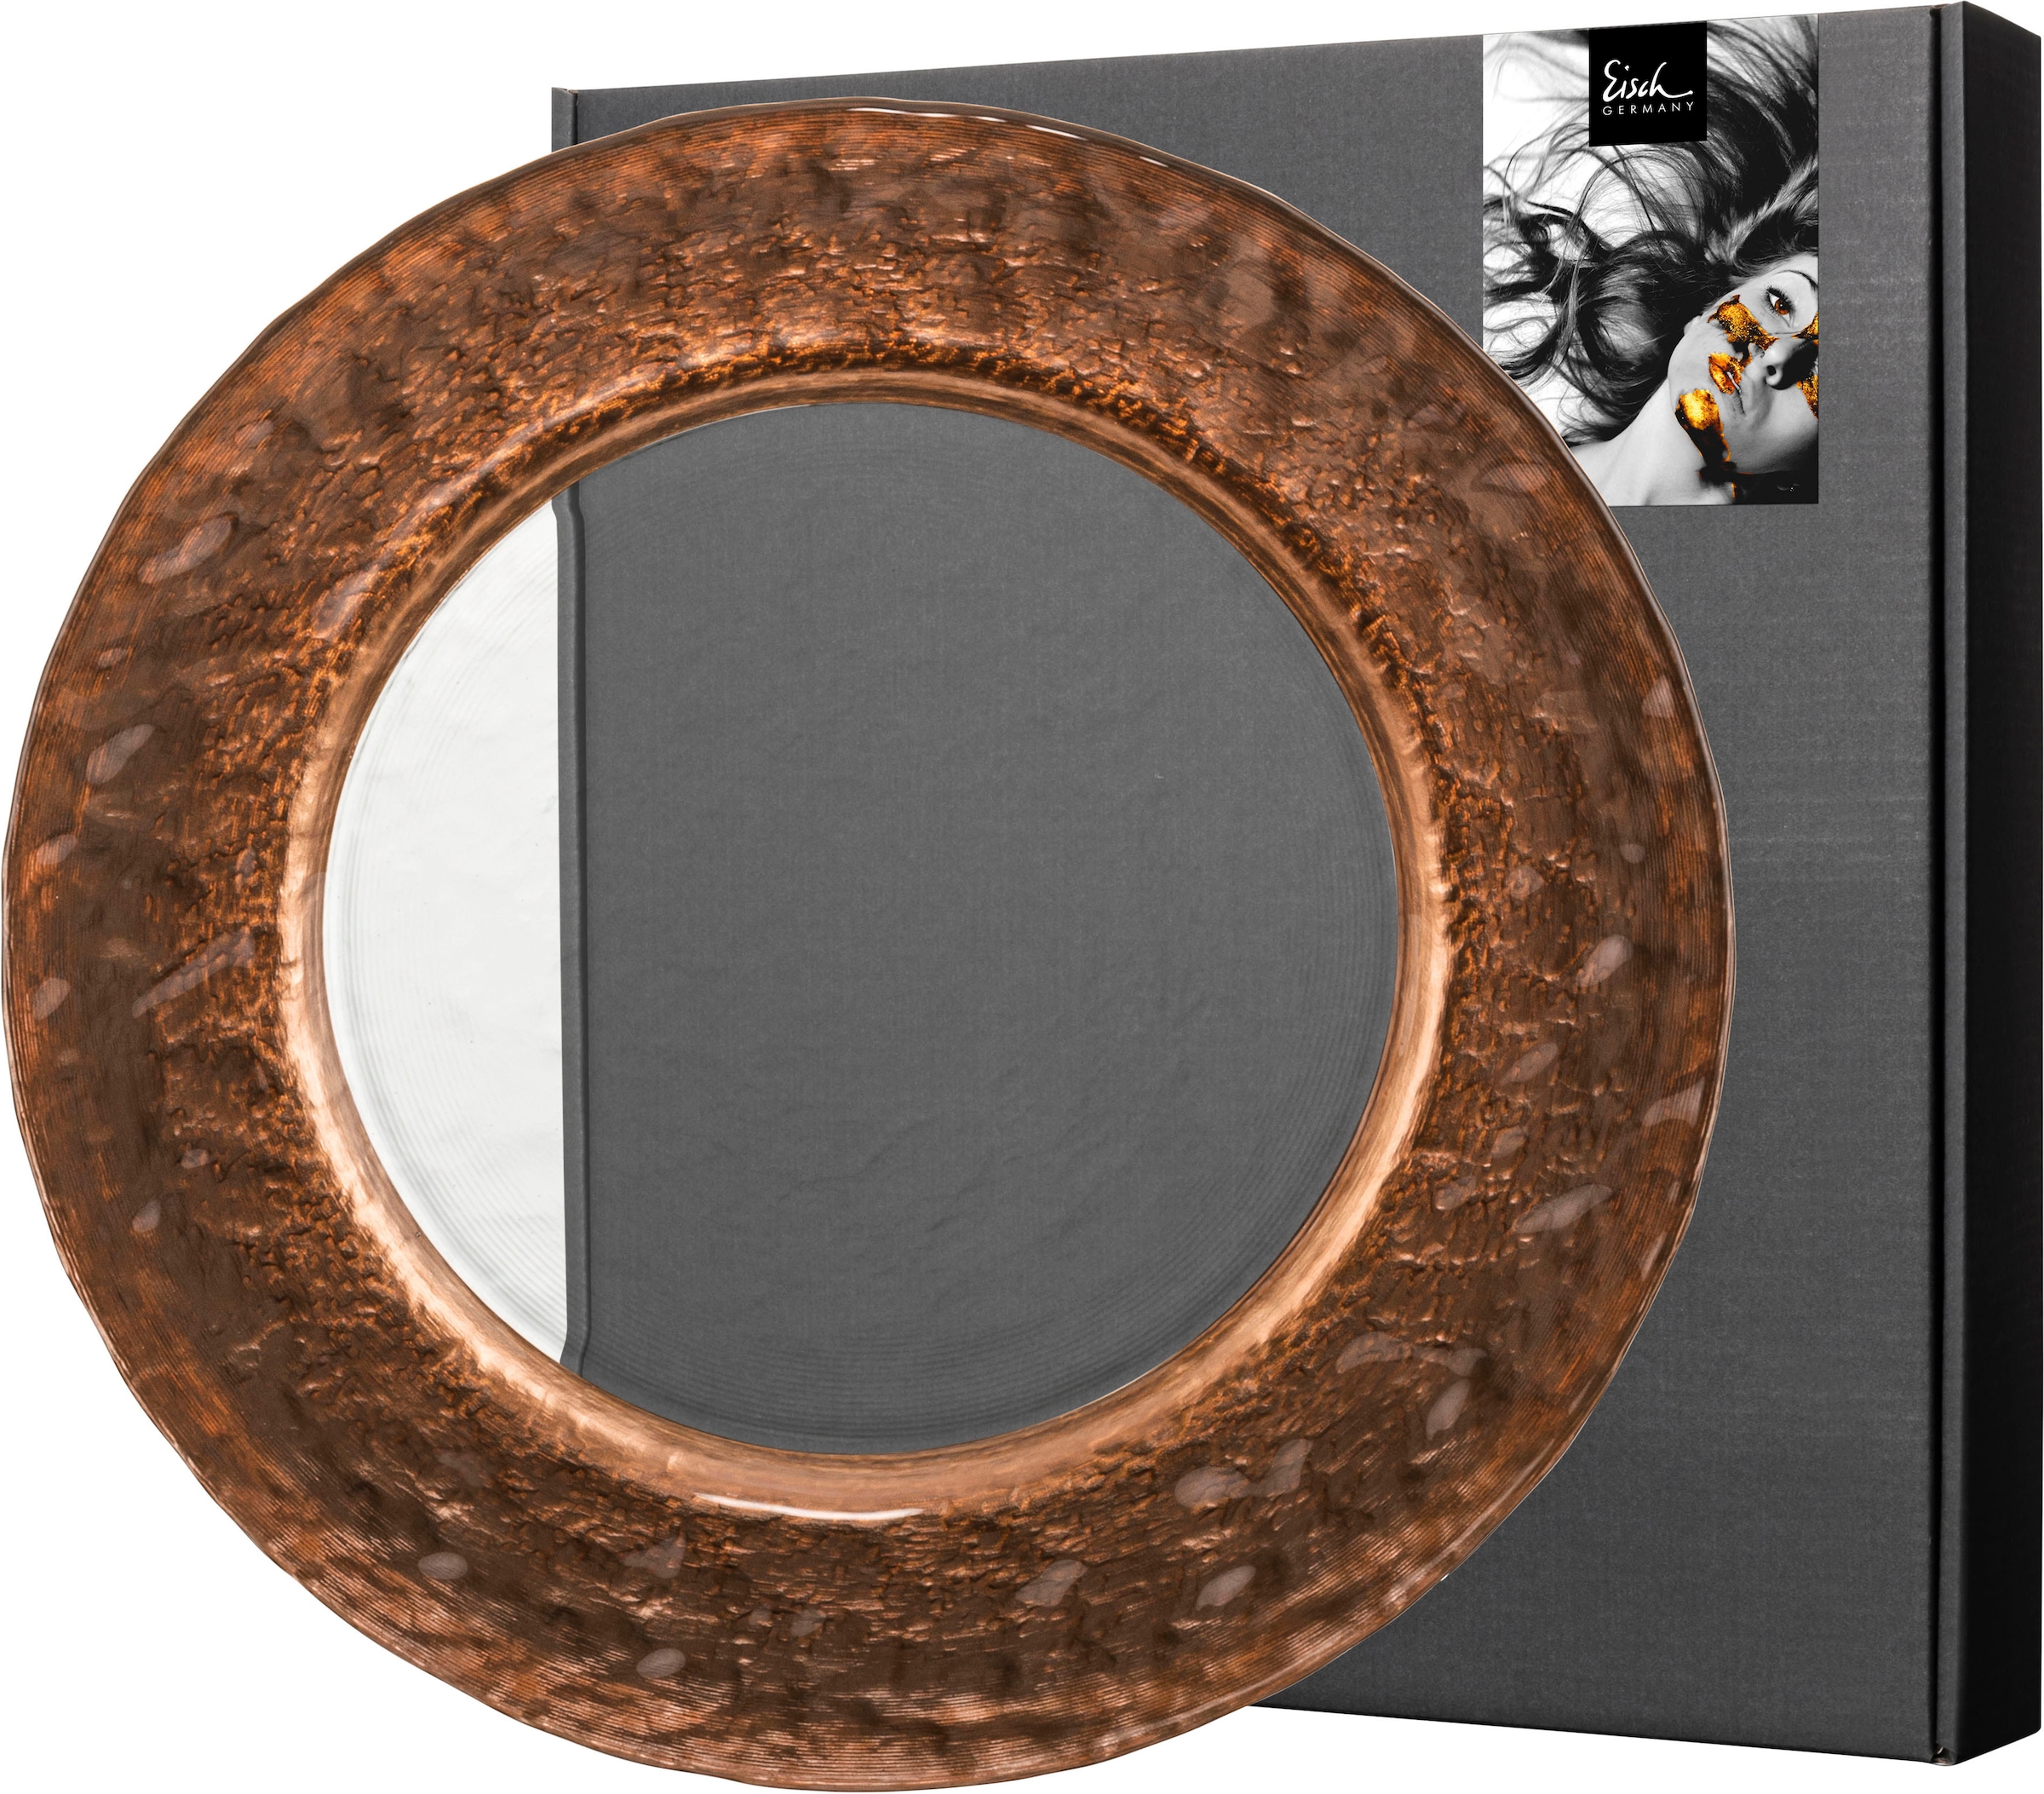 Eisch Platzteller »KAYA COPPER«, (1 tlg.), handveredelt im Kupfer-Look, Ø 34 cm